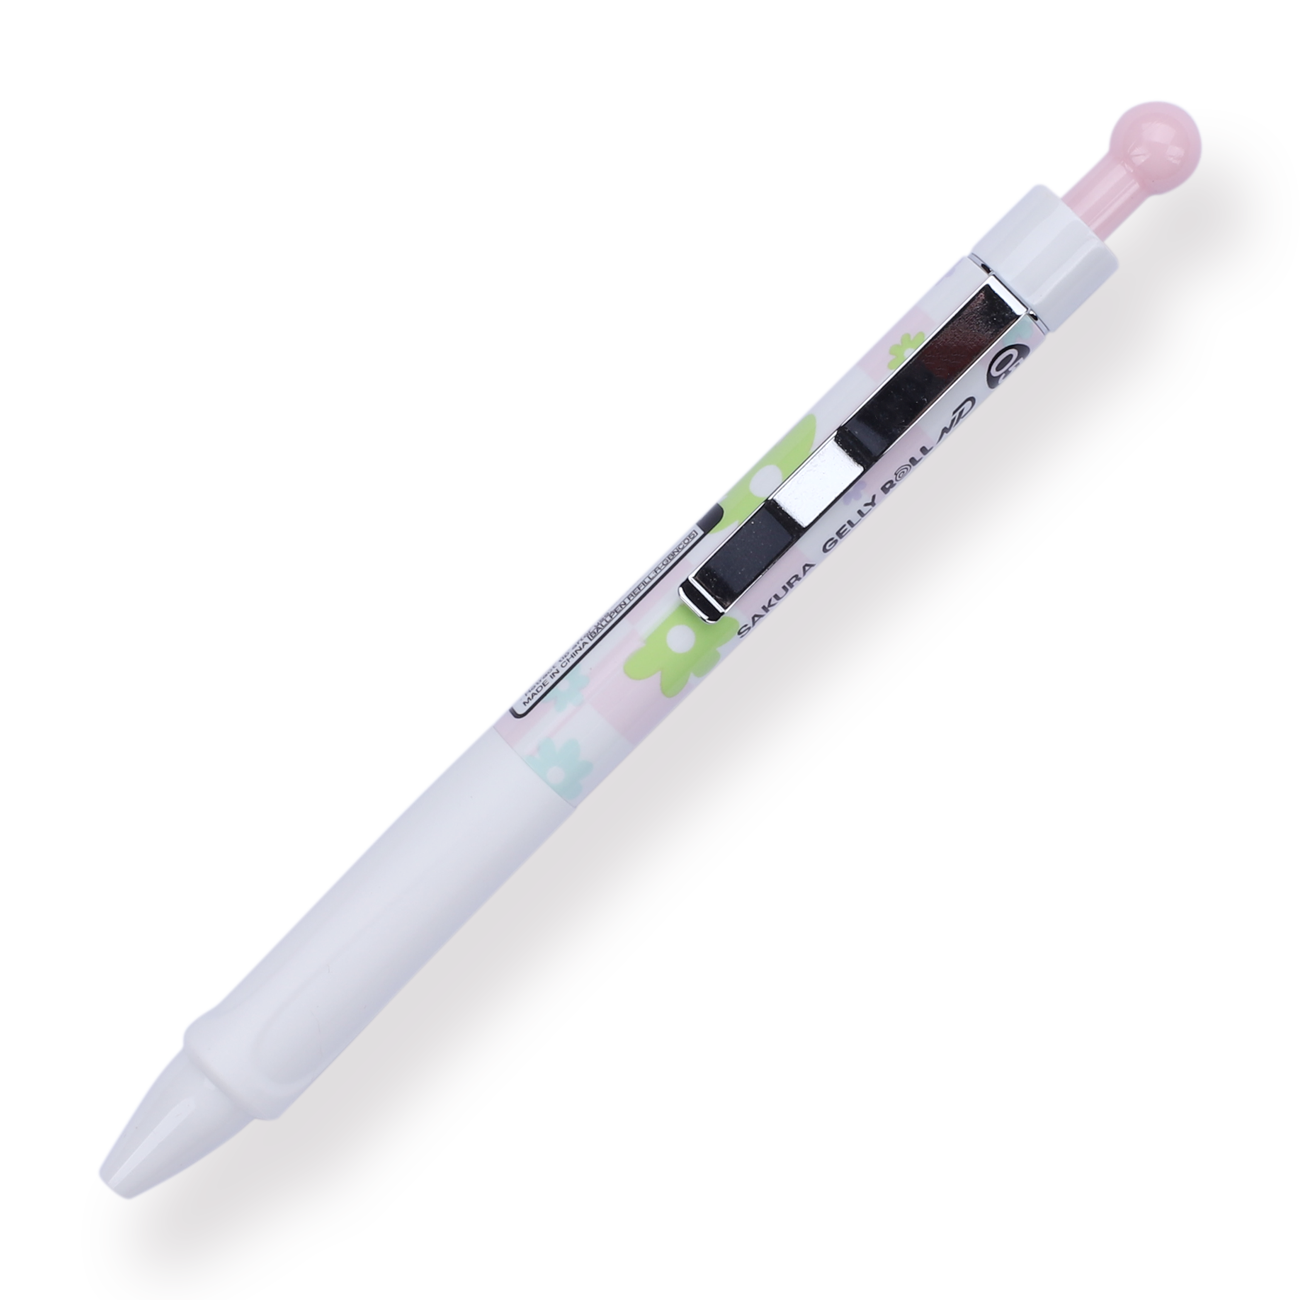 Sakura Press-Type Needle Gel Pen - 0.5 mm - Pink - Stationery Pal